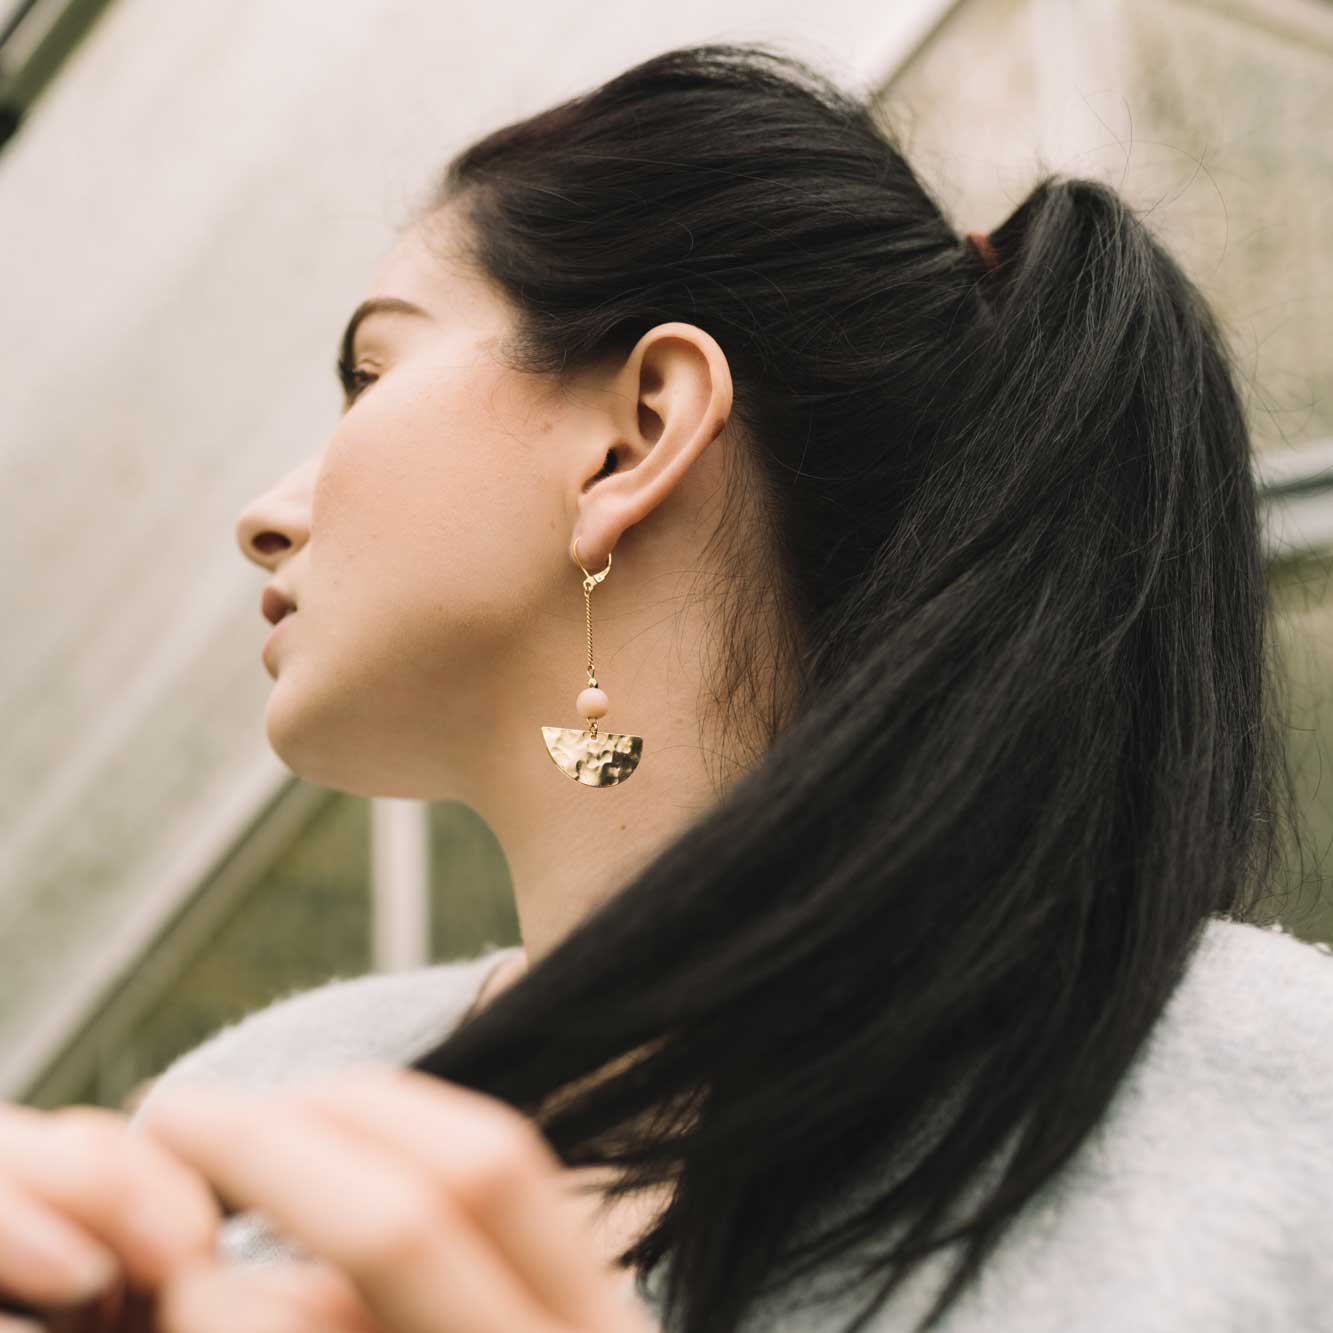 sandrine devost jewelry earrings